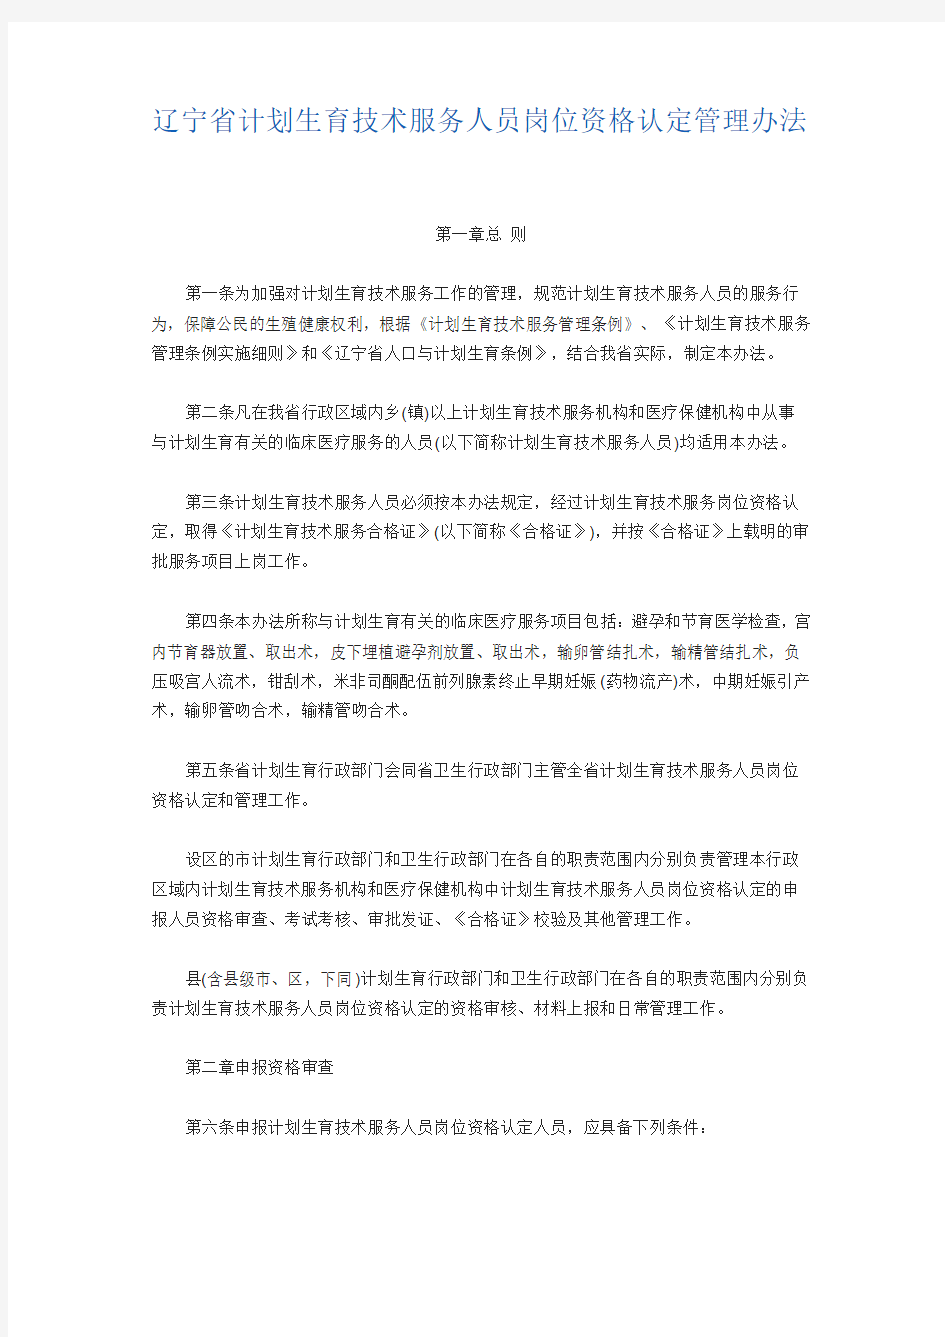 辽宁省计划生育技术服务人员岗位资格认定管理办法